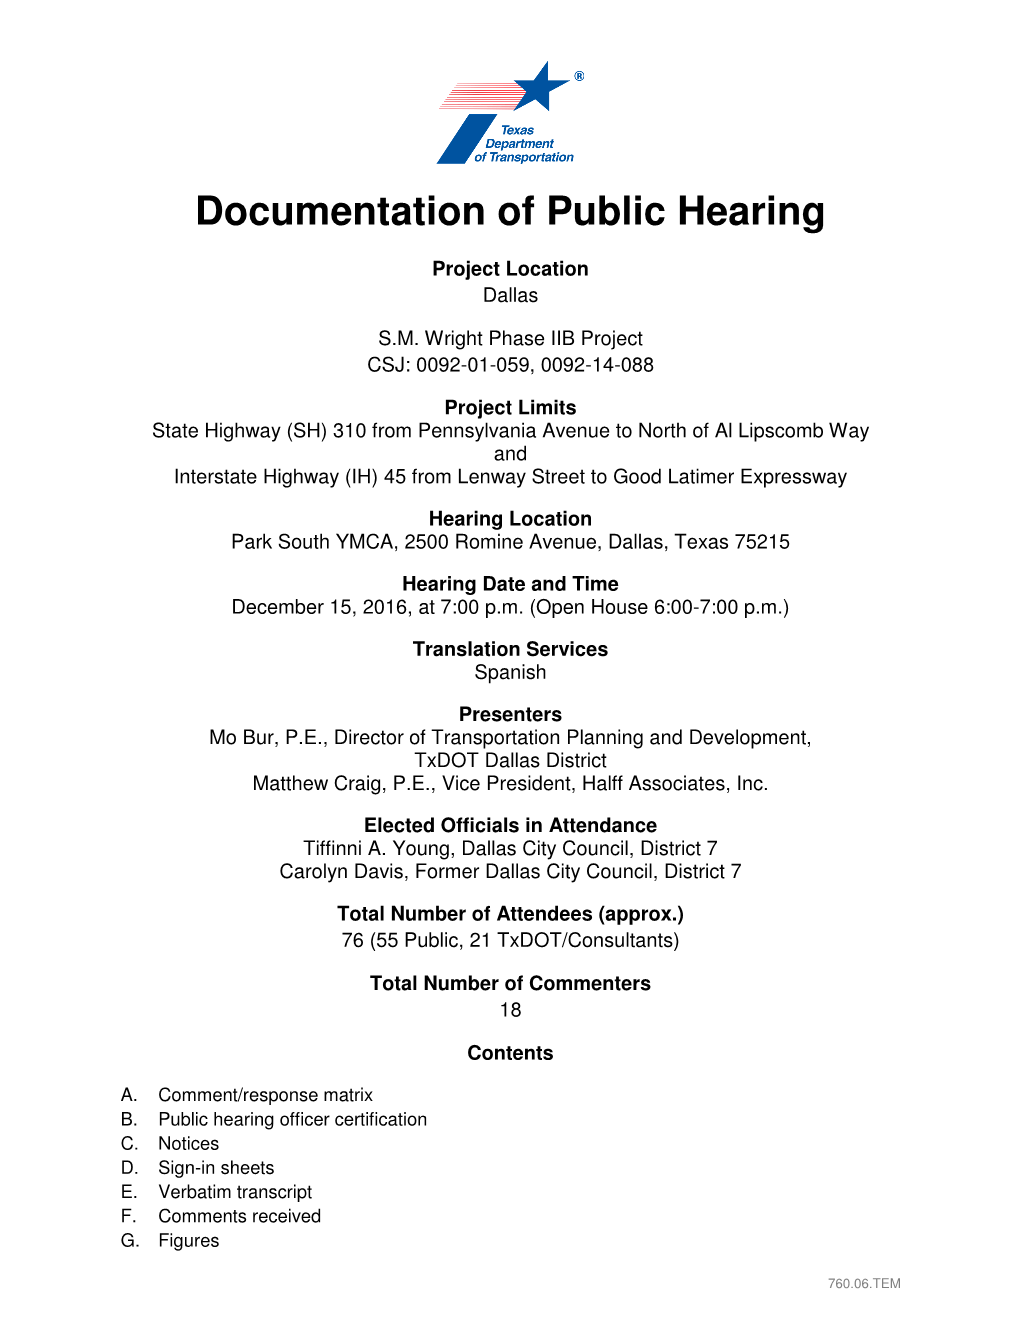 Public Hearing Summary